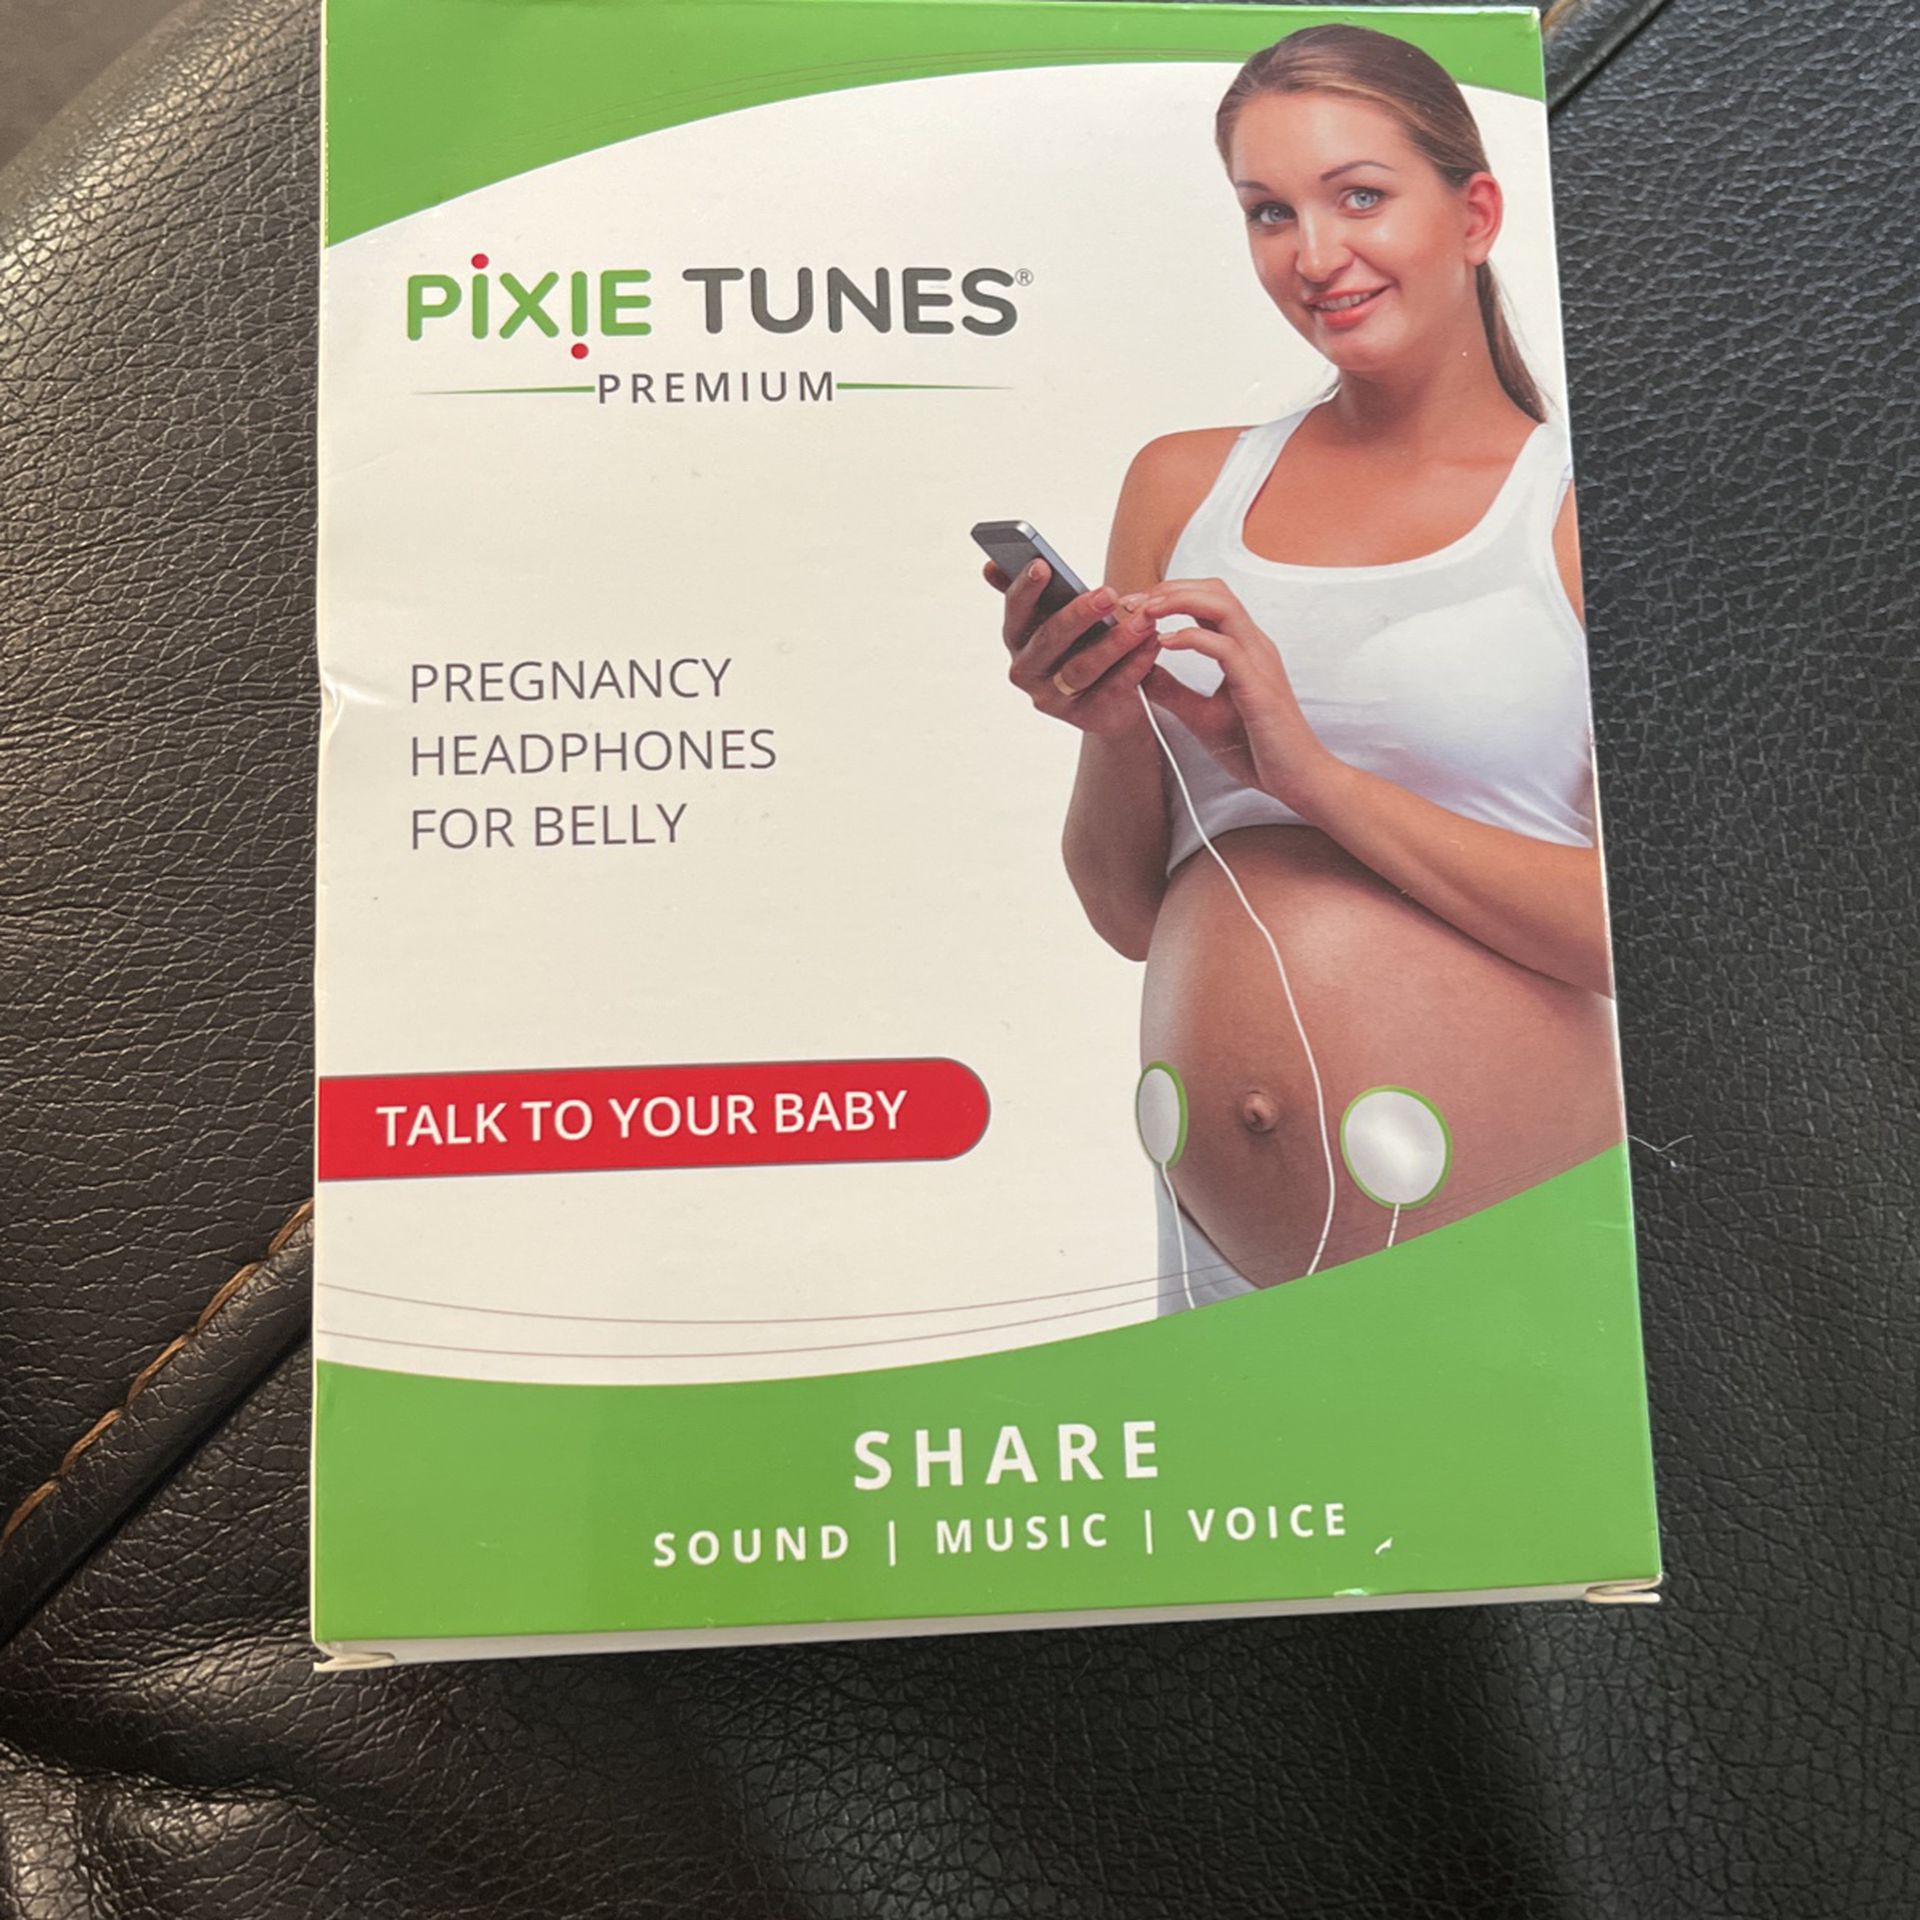 Pixie Tunes Premium